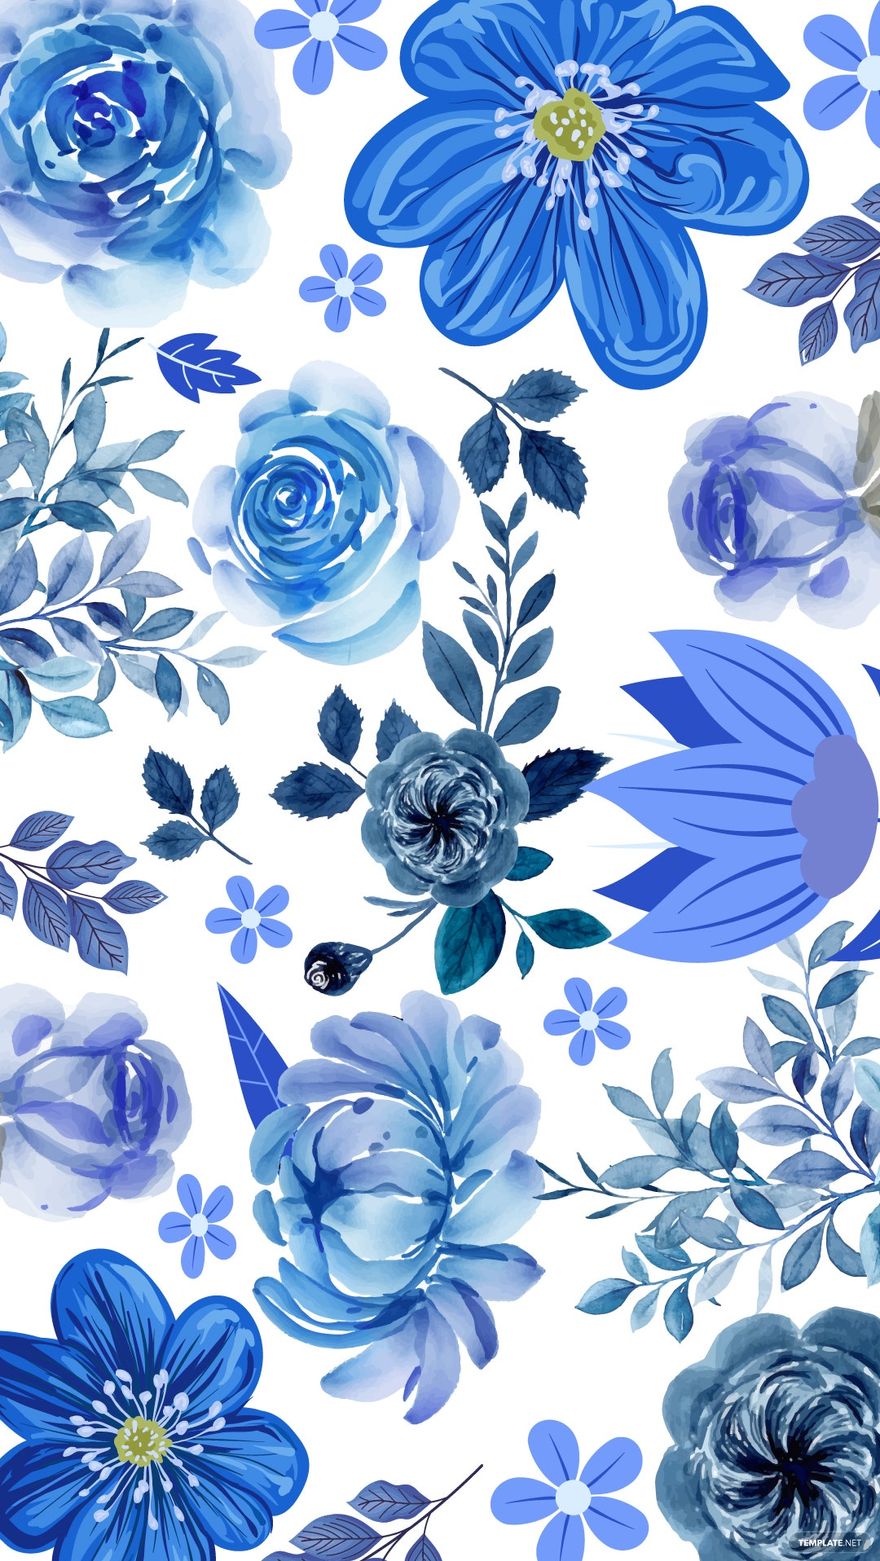 Free Royal Blue Floral Background - EPS, Illustrator, JPG, SVG |  